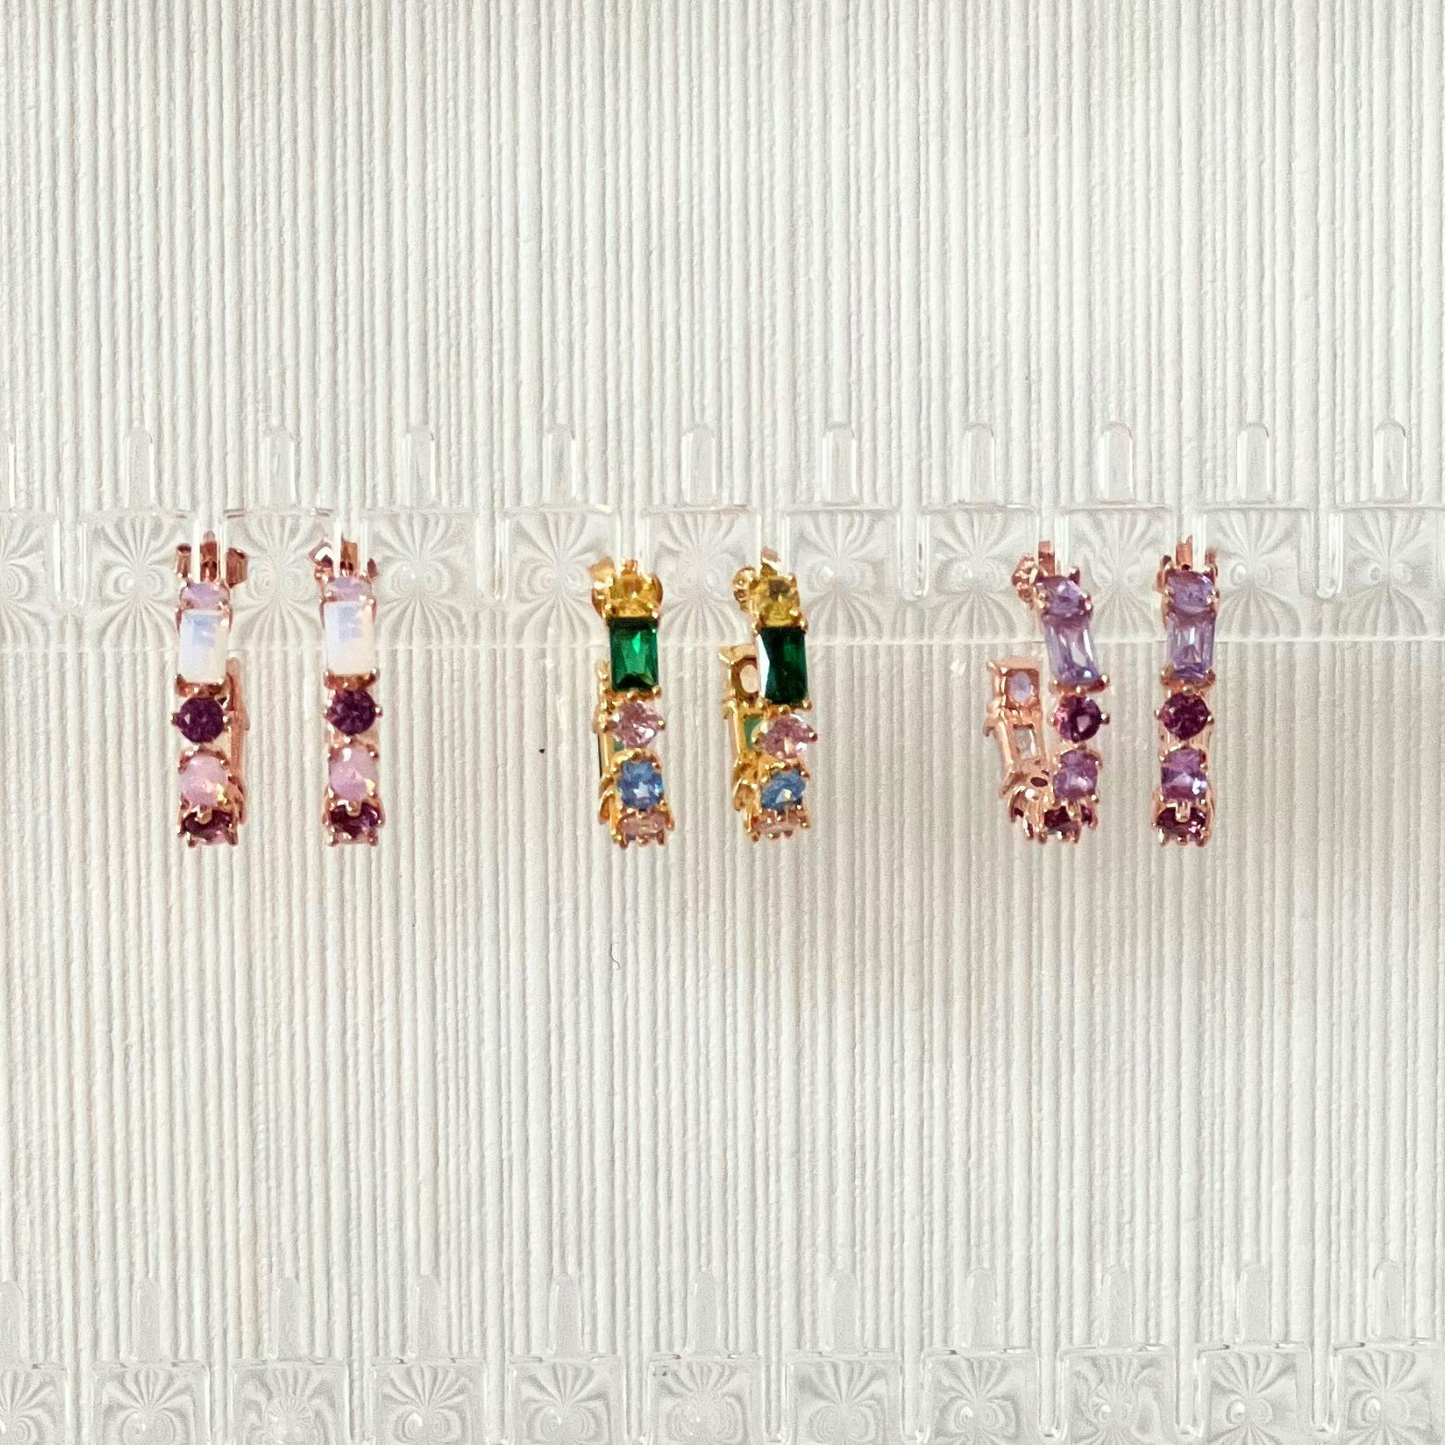 Yeo-wang 18k Gold Vermeil Earrings and 2 other similar earrings- KORYANGS Brand